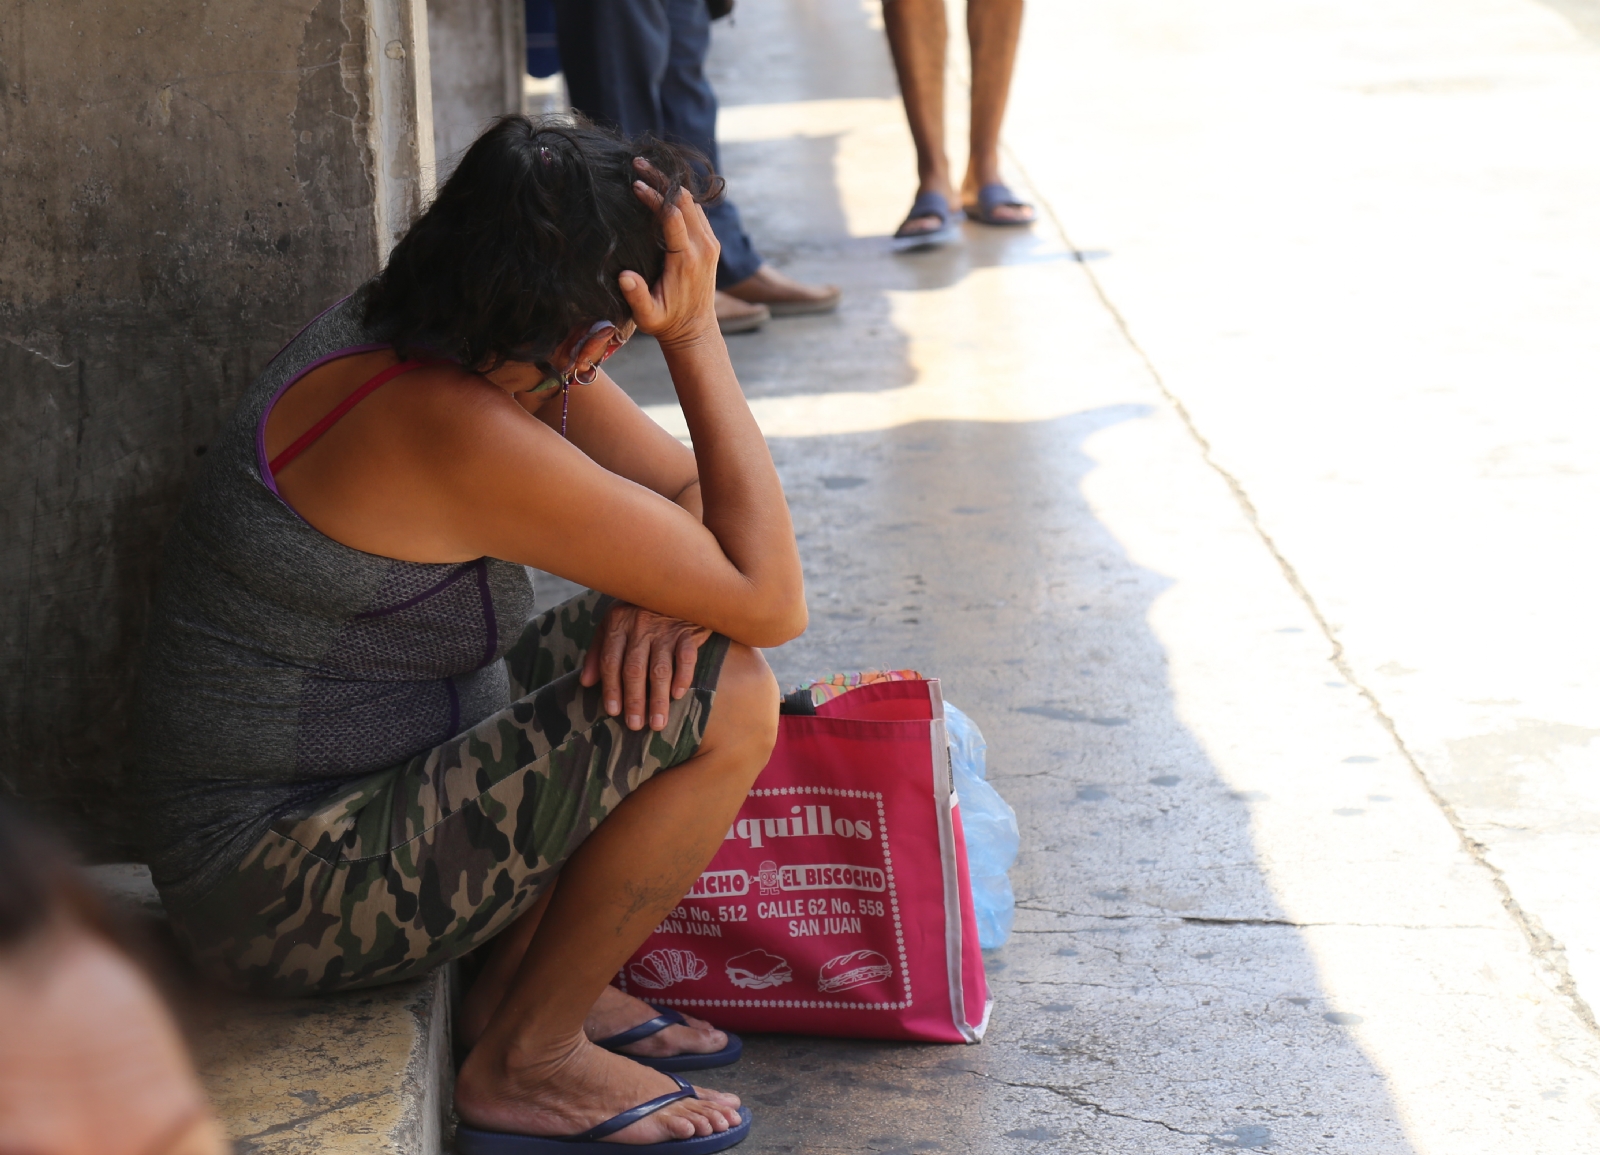 Rupturas amorosas y despidos, las causas más comunes del suicidio durante diciembre en Yucatán